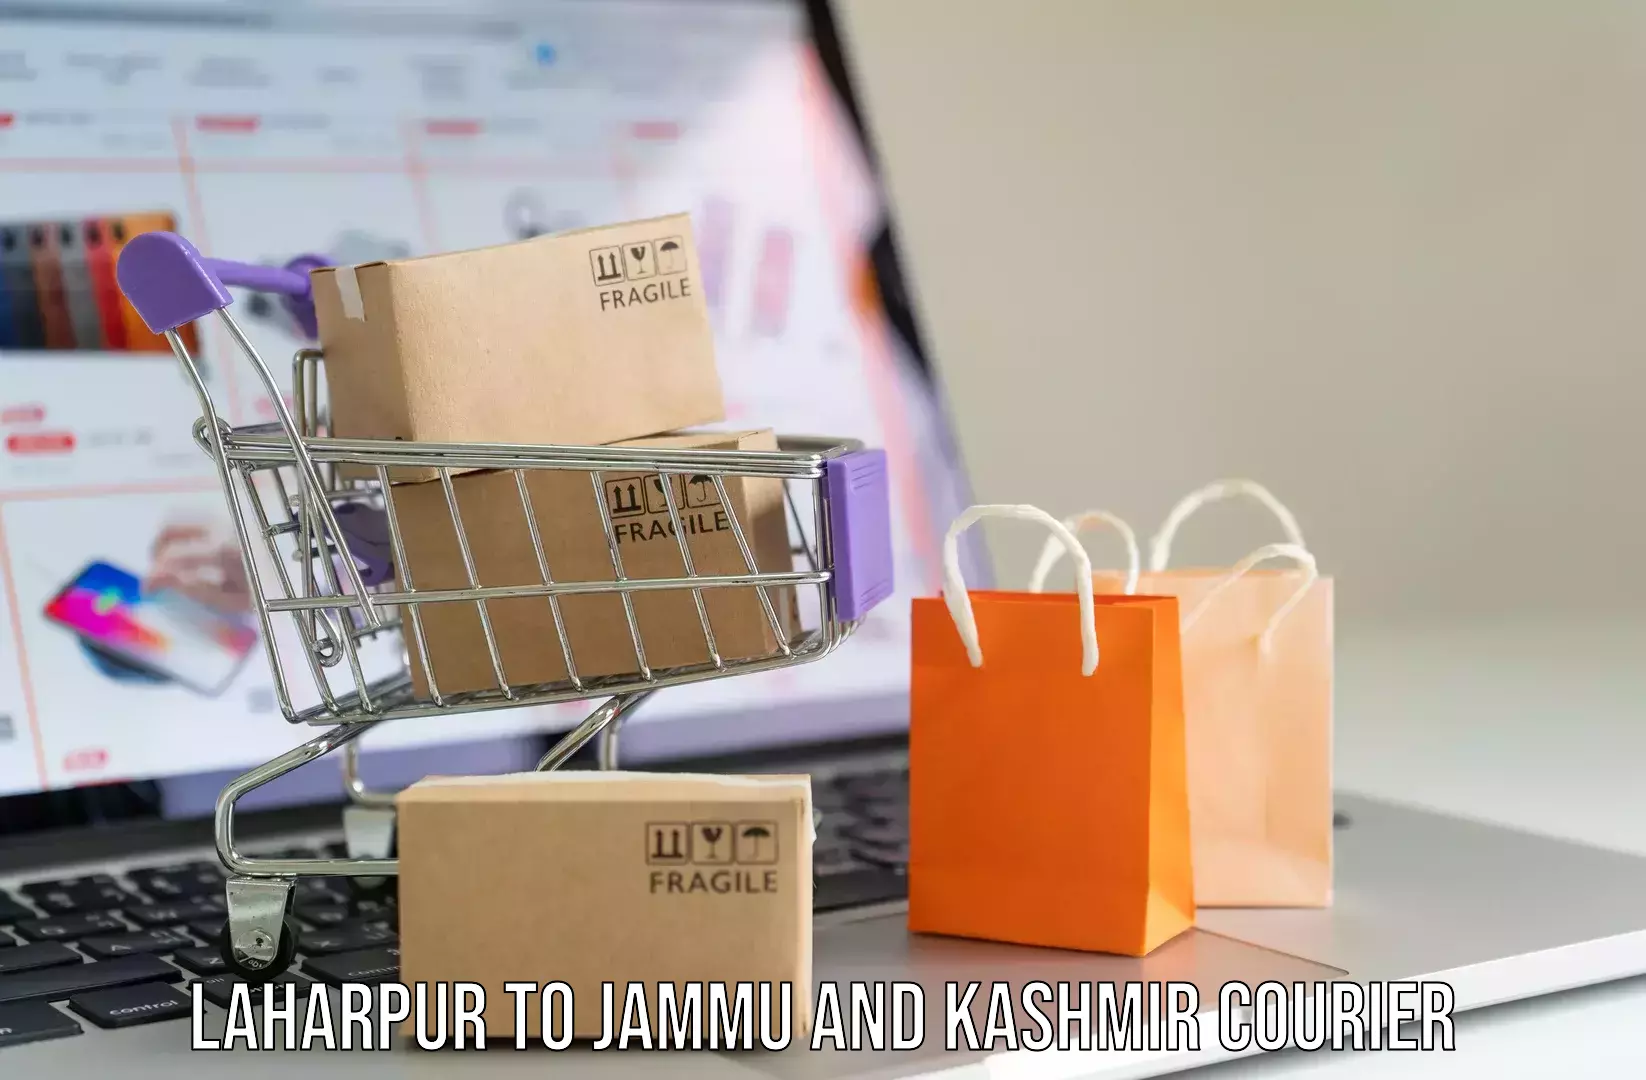 Luggage delivery app Laharpur to Kargil